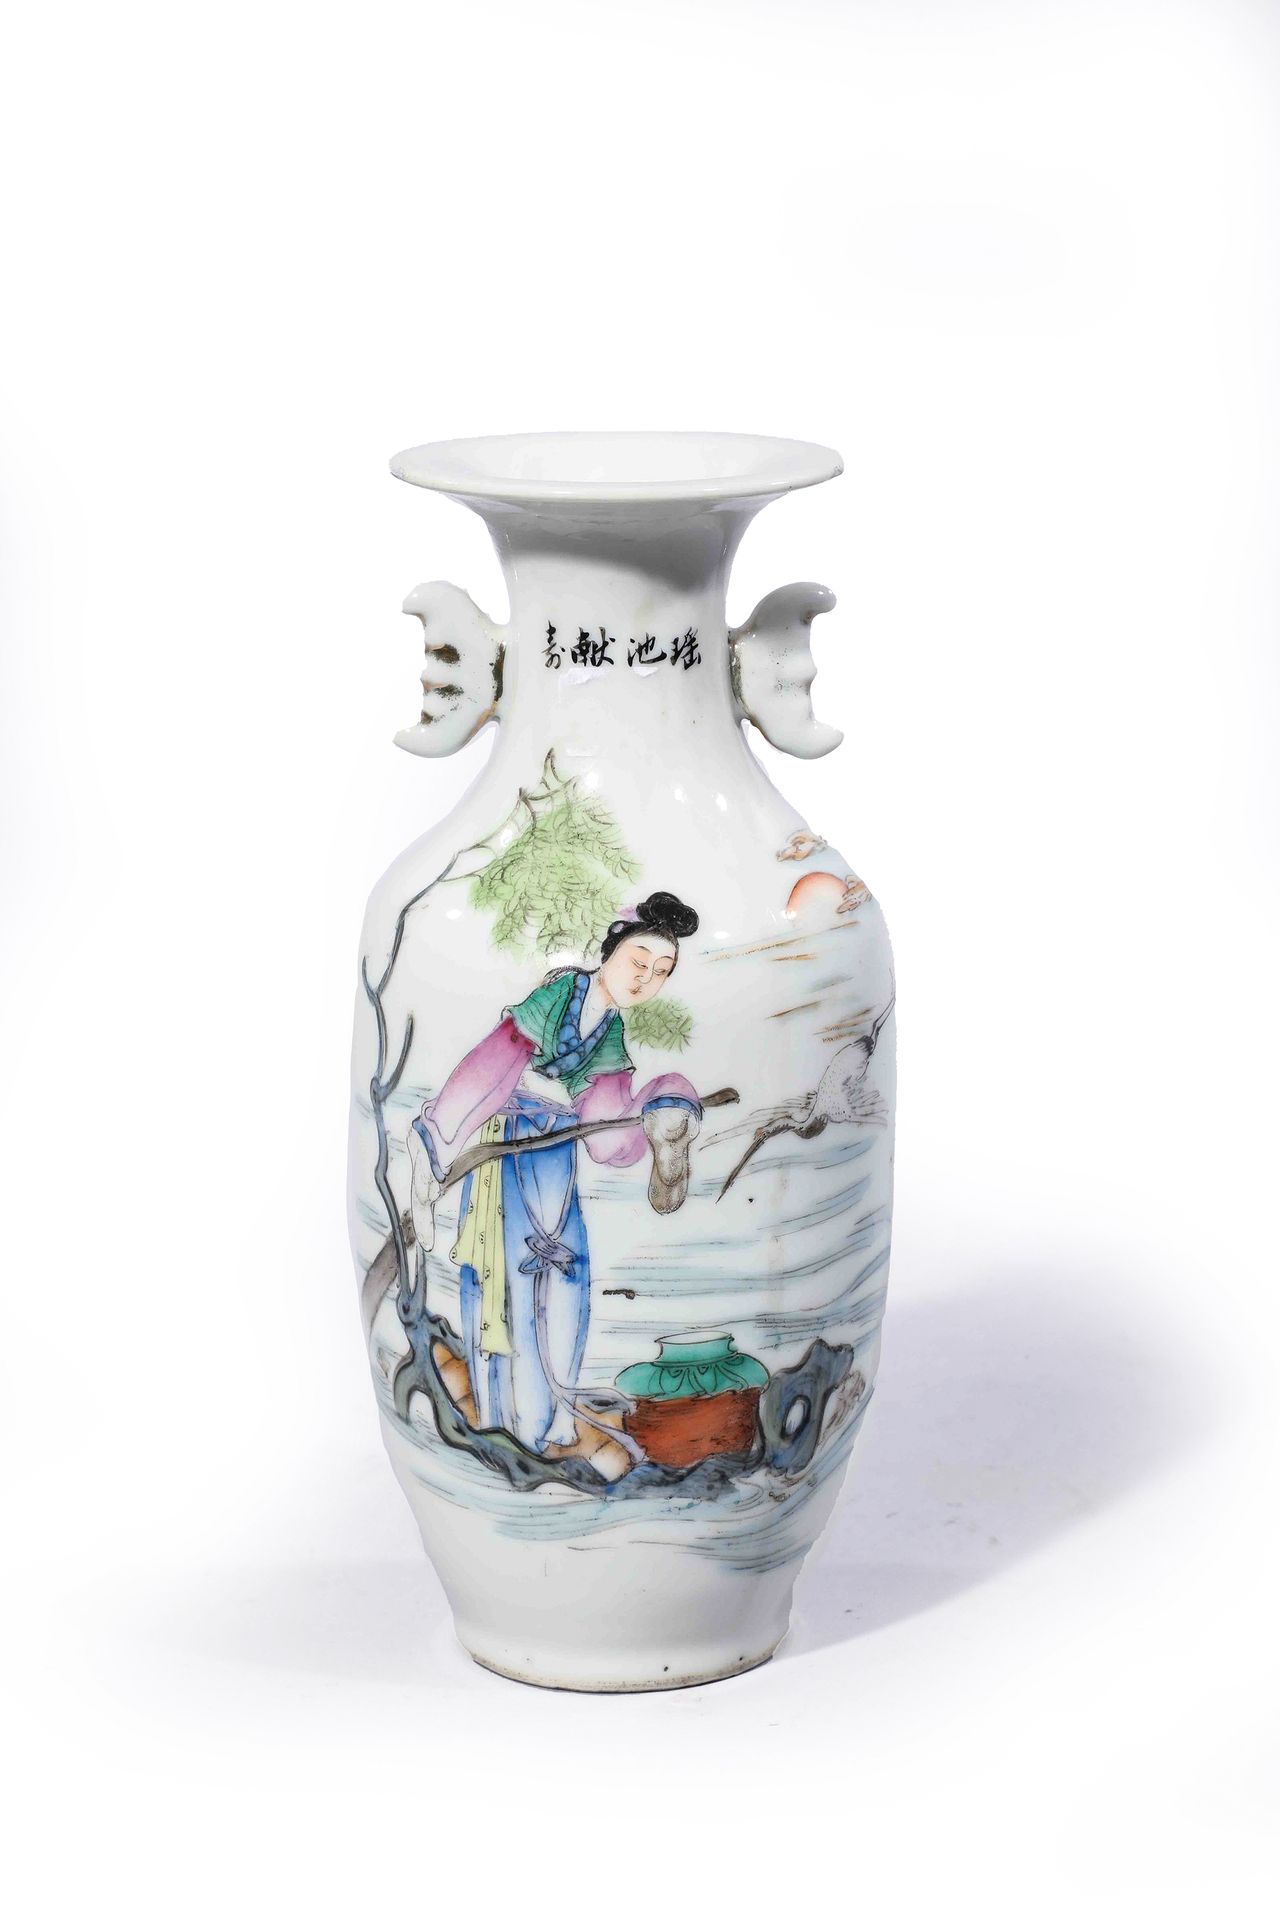 Null 
Porzellanvase dekoriert mit

von Zeichen.

China 20. Jahrhundert

H. 23 cm